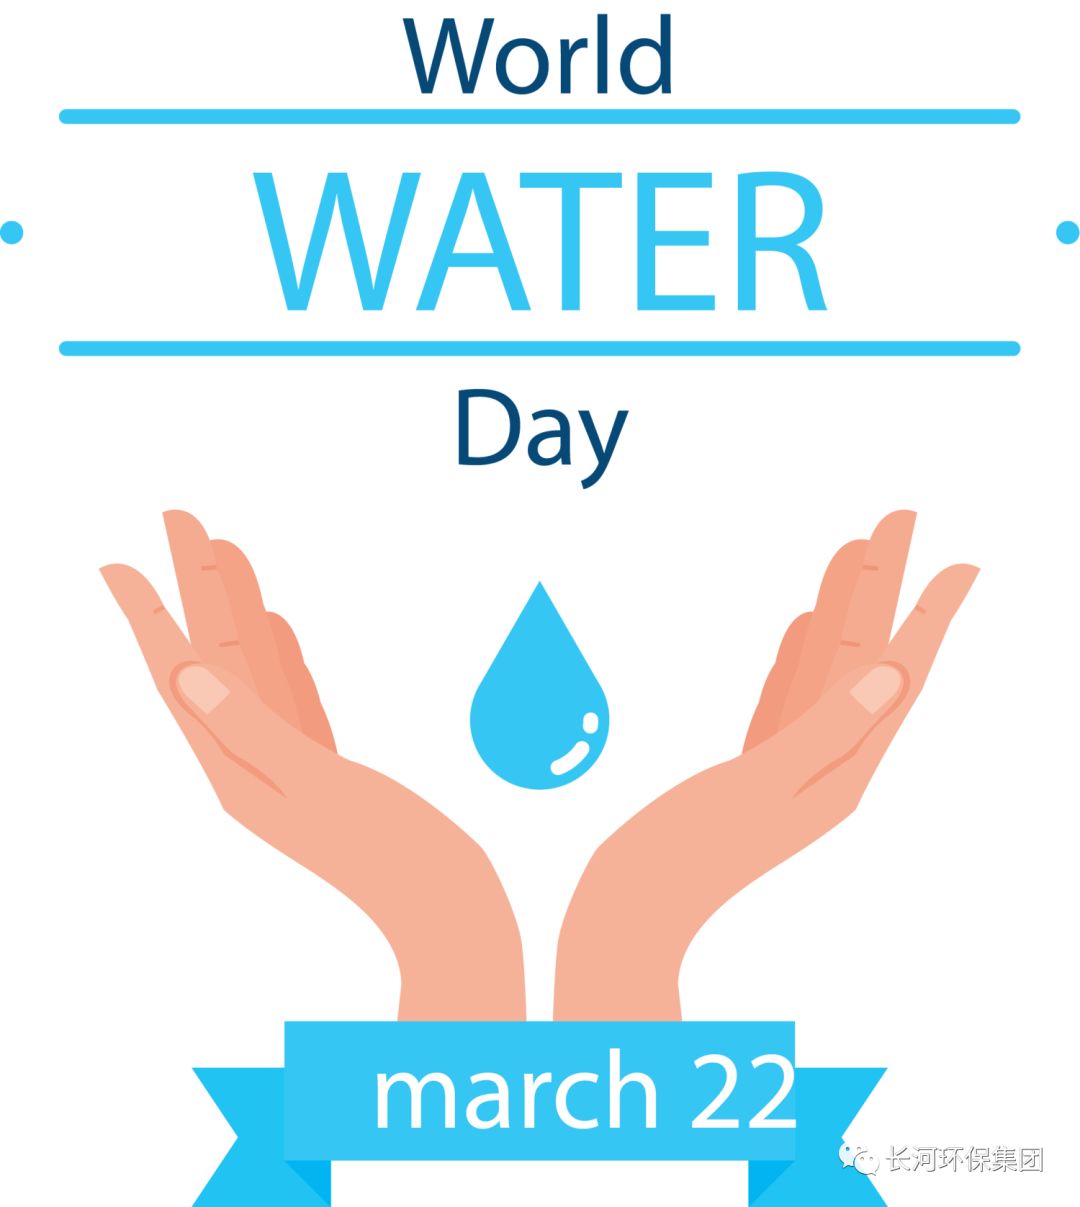 世界水日，保護水資源長河環保正在行動！